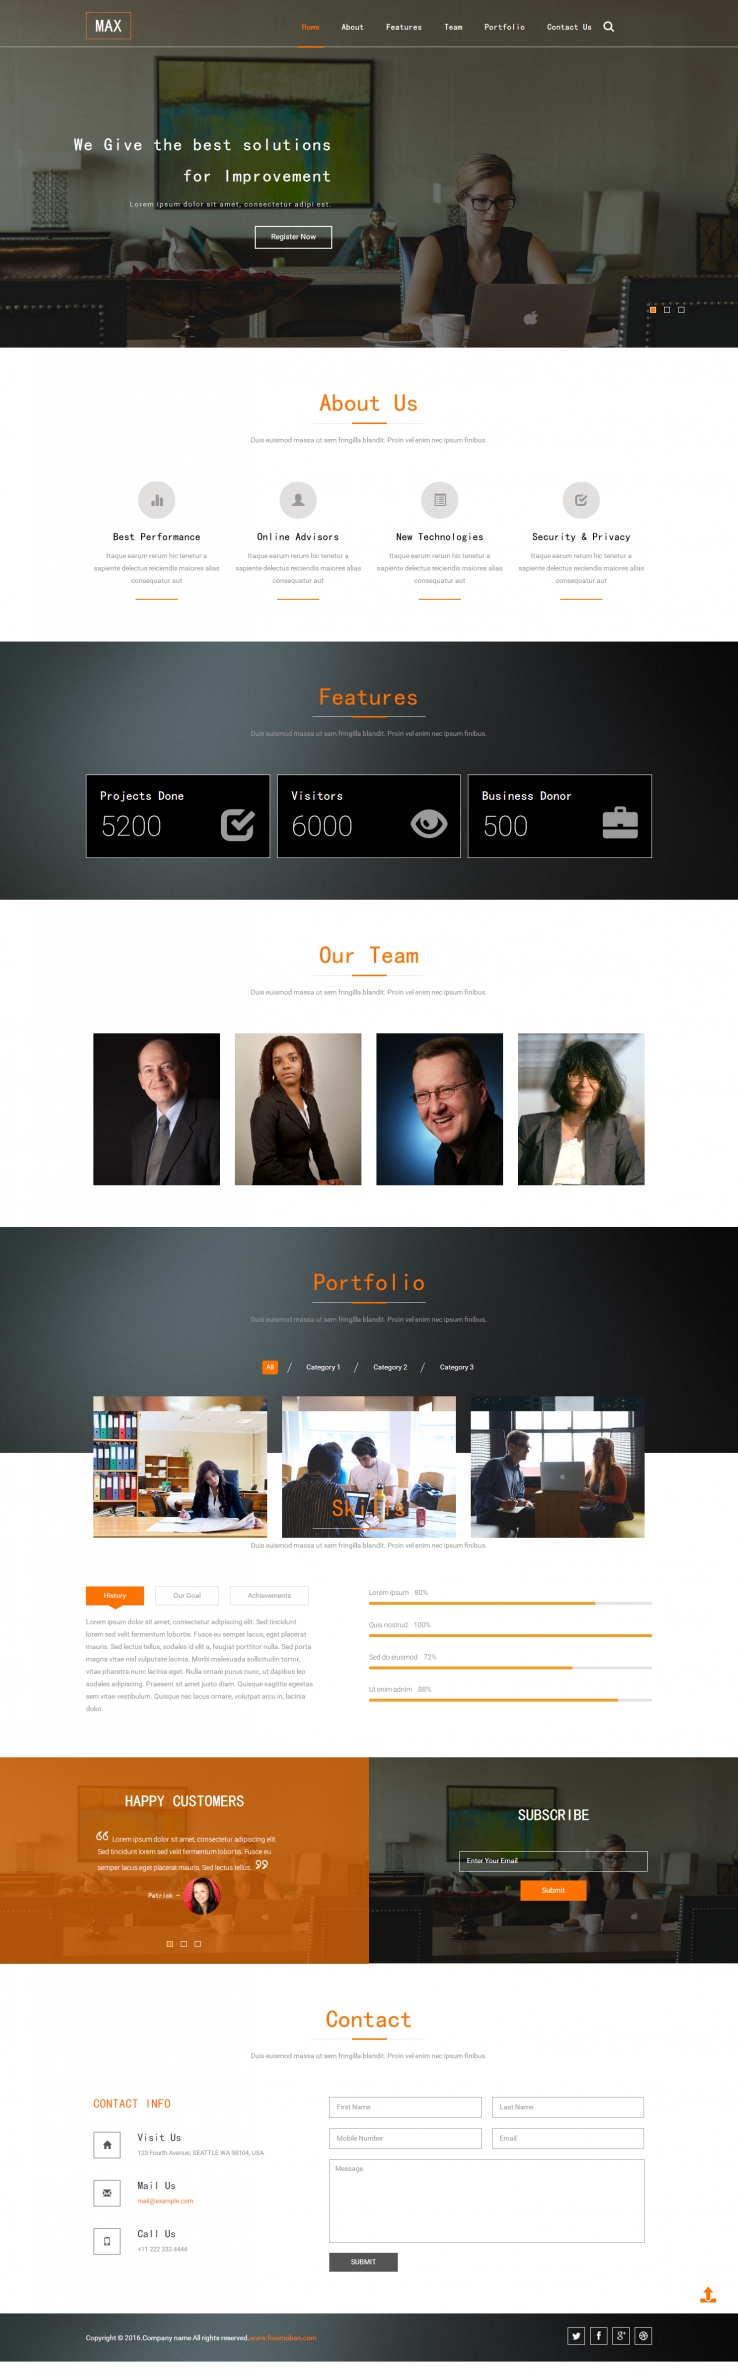 橙色简洁风格的公司业务介绍网站模板下载